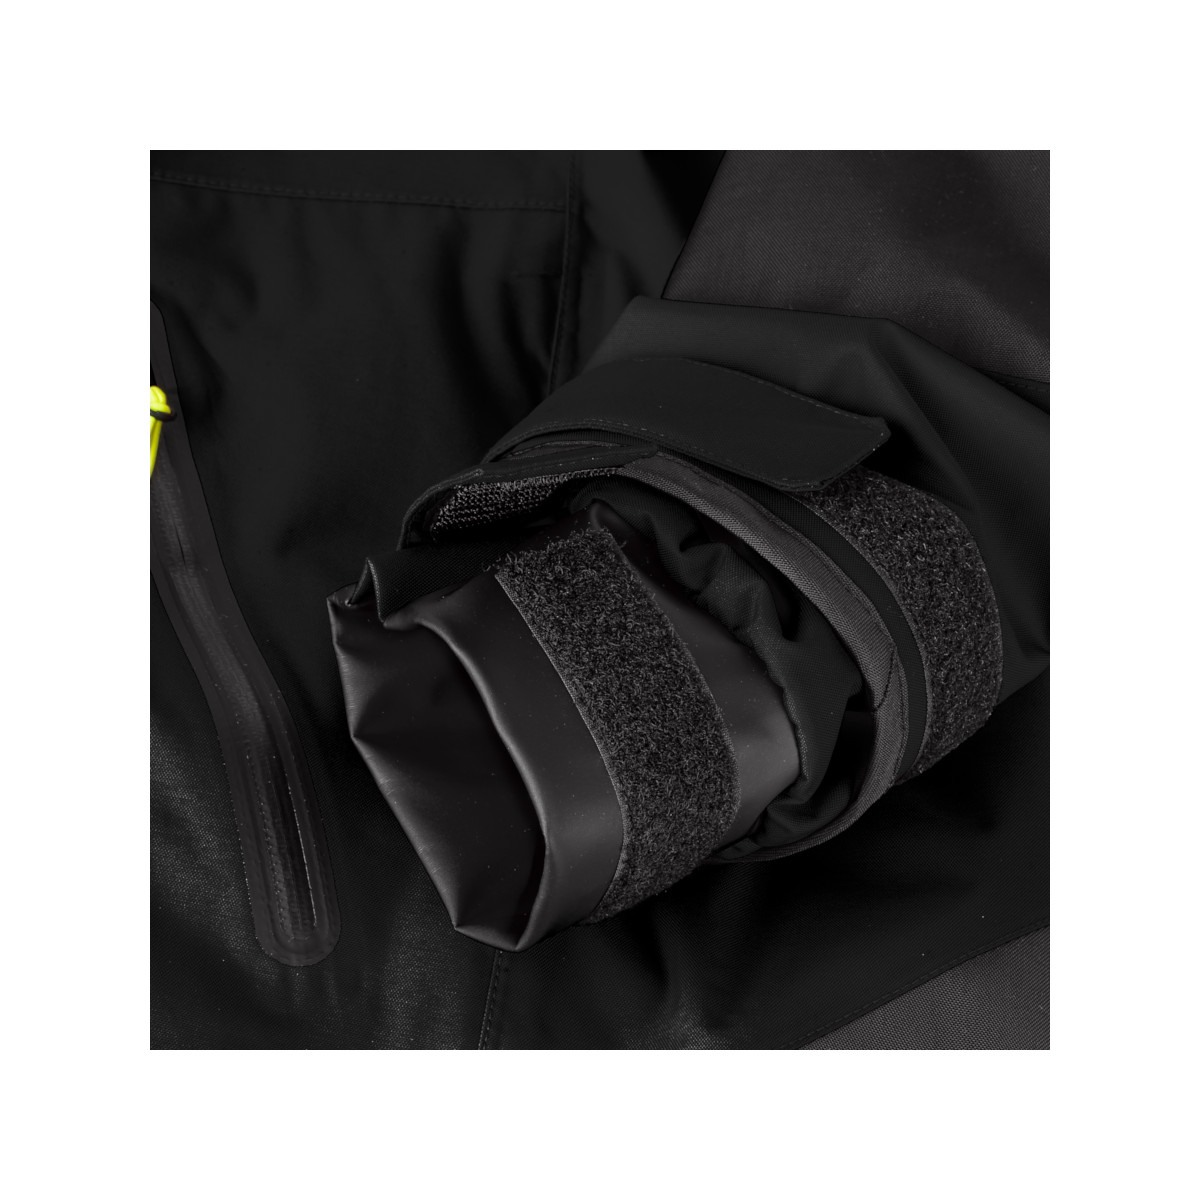 12skipper Magellan veste de quart hauturière, unisexe - noir, taille L